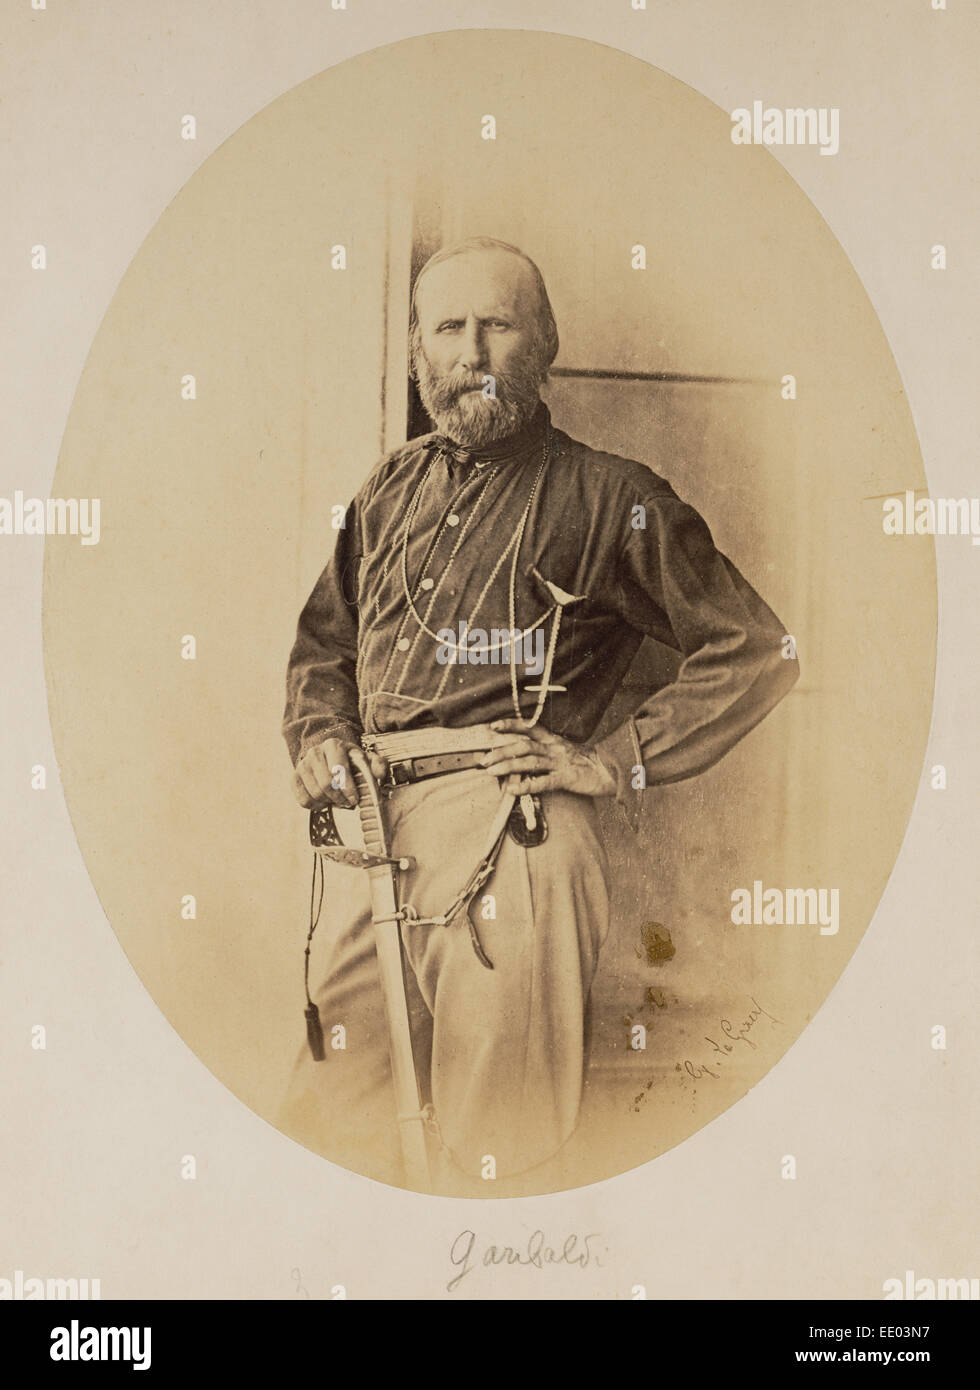 Portrait de Giuseppe Garibaldi, Gustave Le Gray, Français, 1820 - 1884, Palerme, Italie, Sicile, Europe ; Juin 1860 Banque D'Images